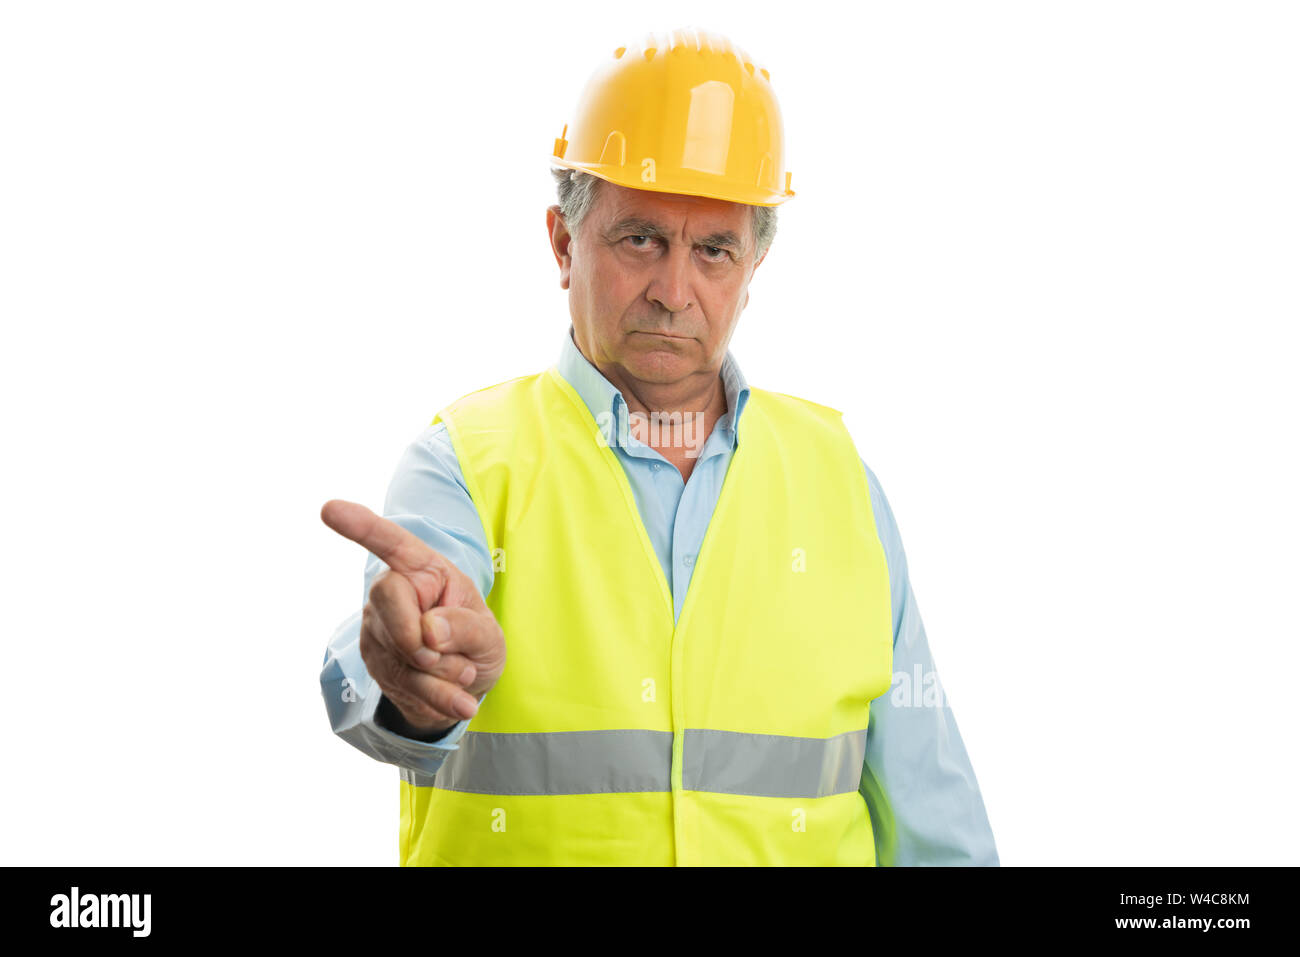 Alte builder Mann mit ernsten Ausdruck auf Leerer copyspace oben auf weißem Hintergrund zeigen Stockfoto